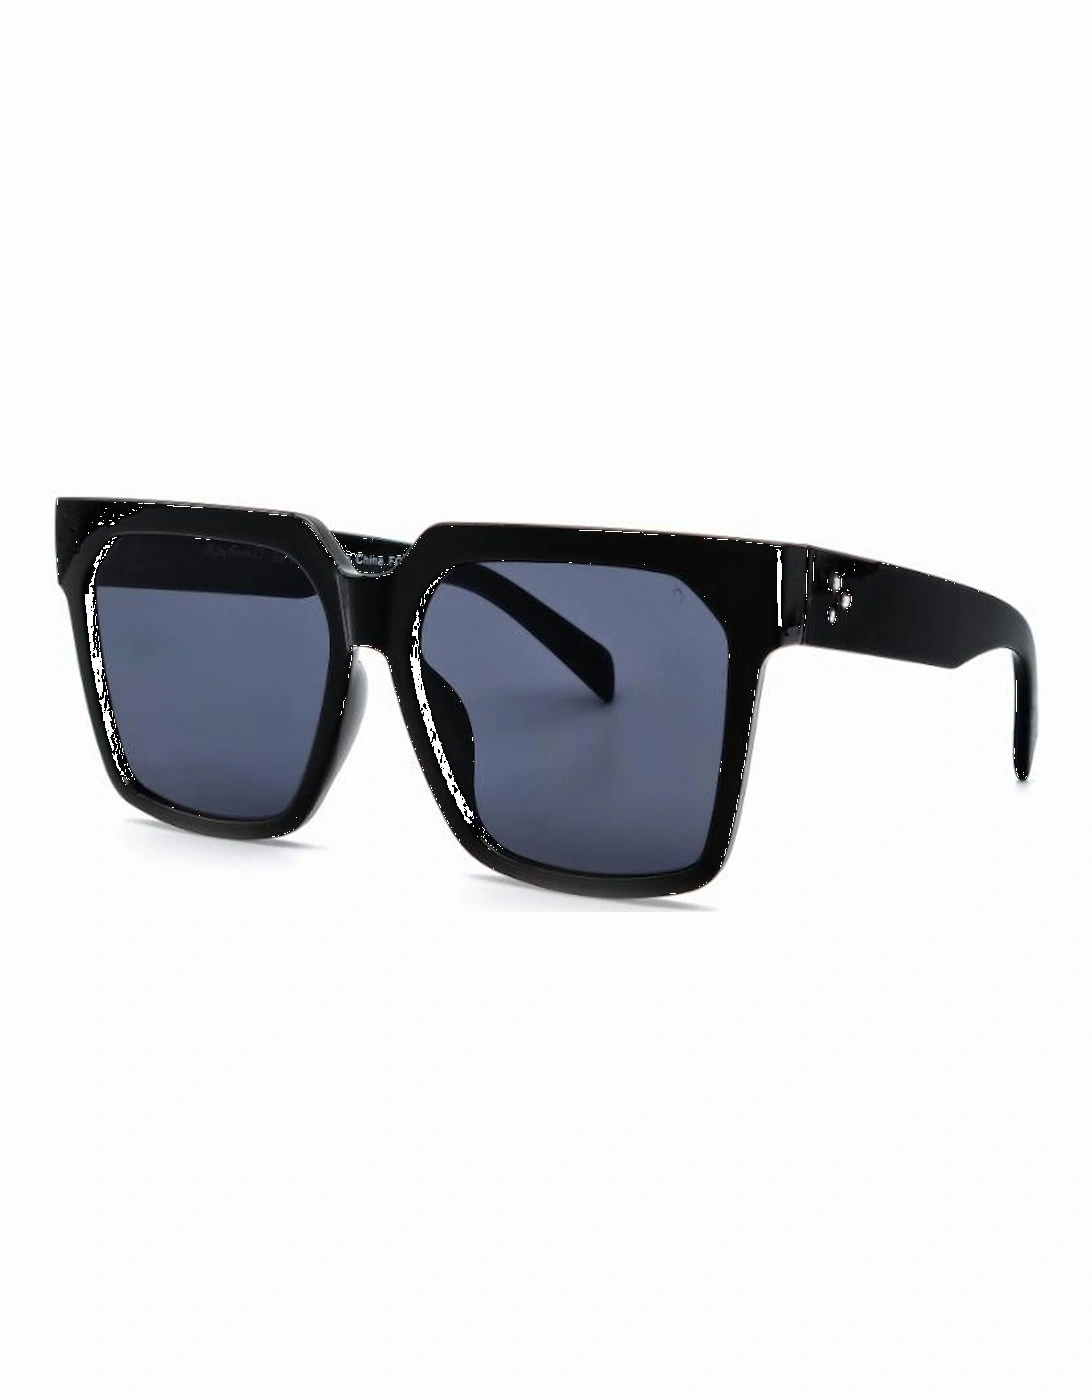 FIMMEL Sunglasses, 2 of 1